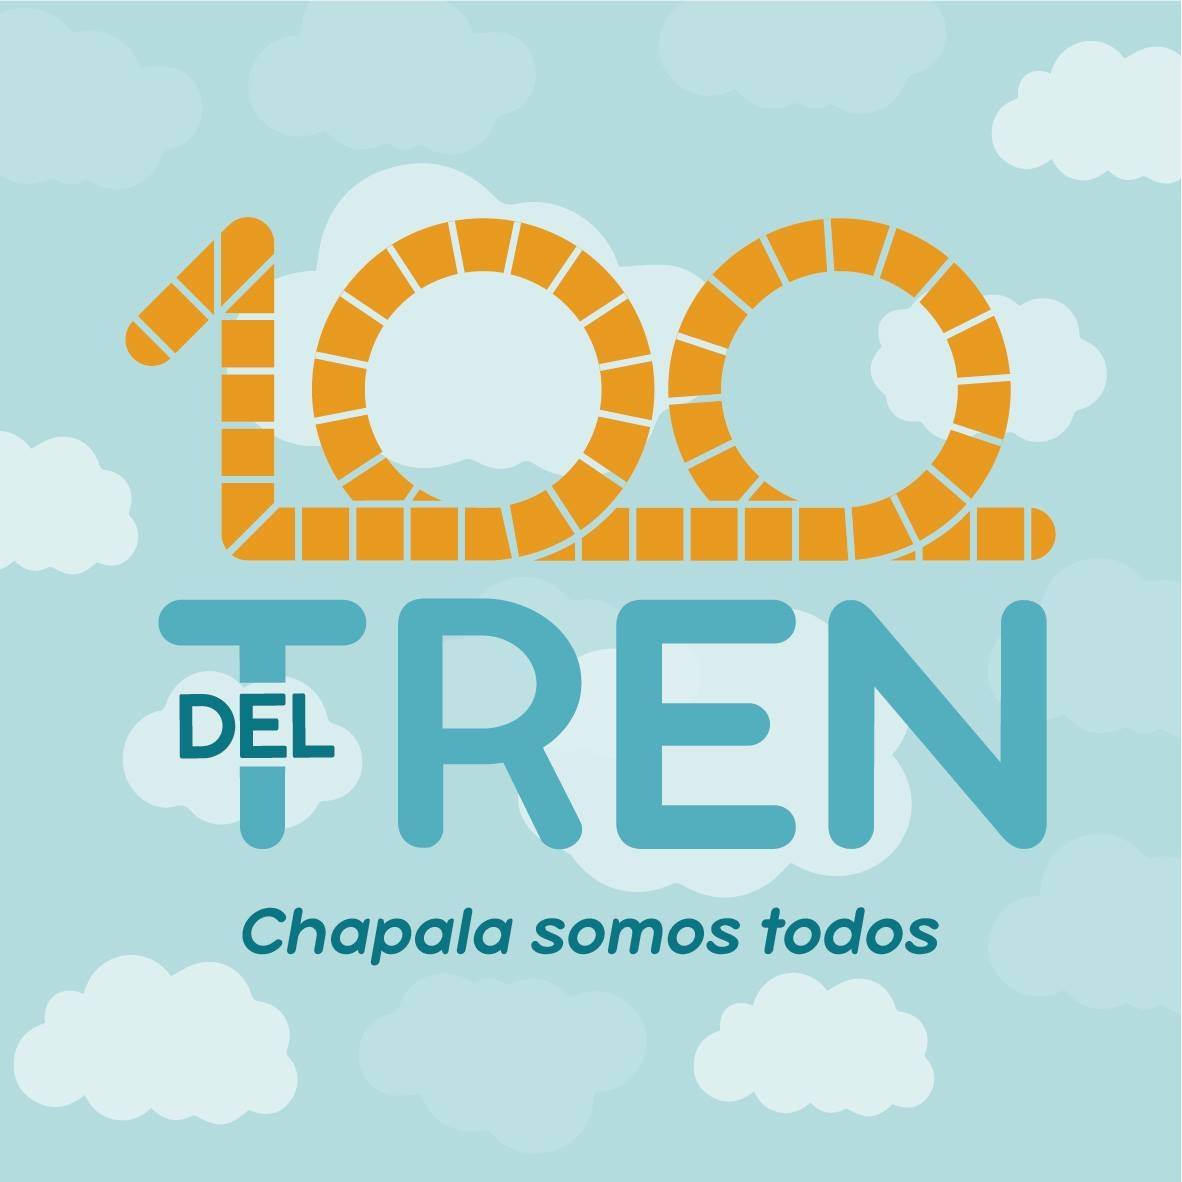 Imagen conmemorativa "100 del Tren"